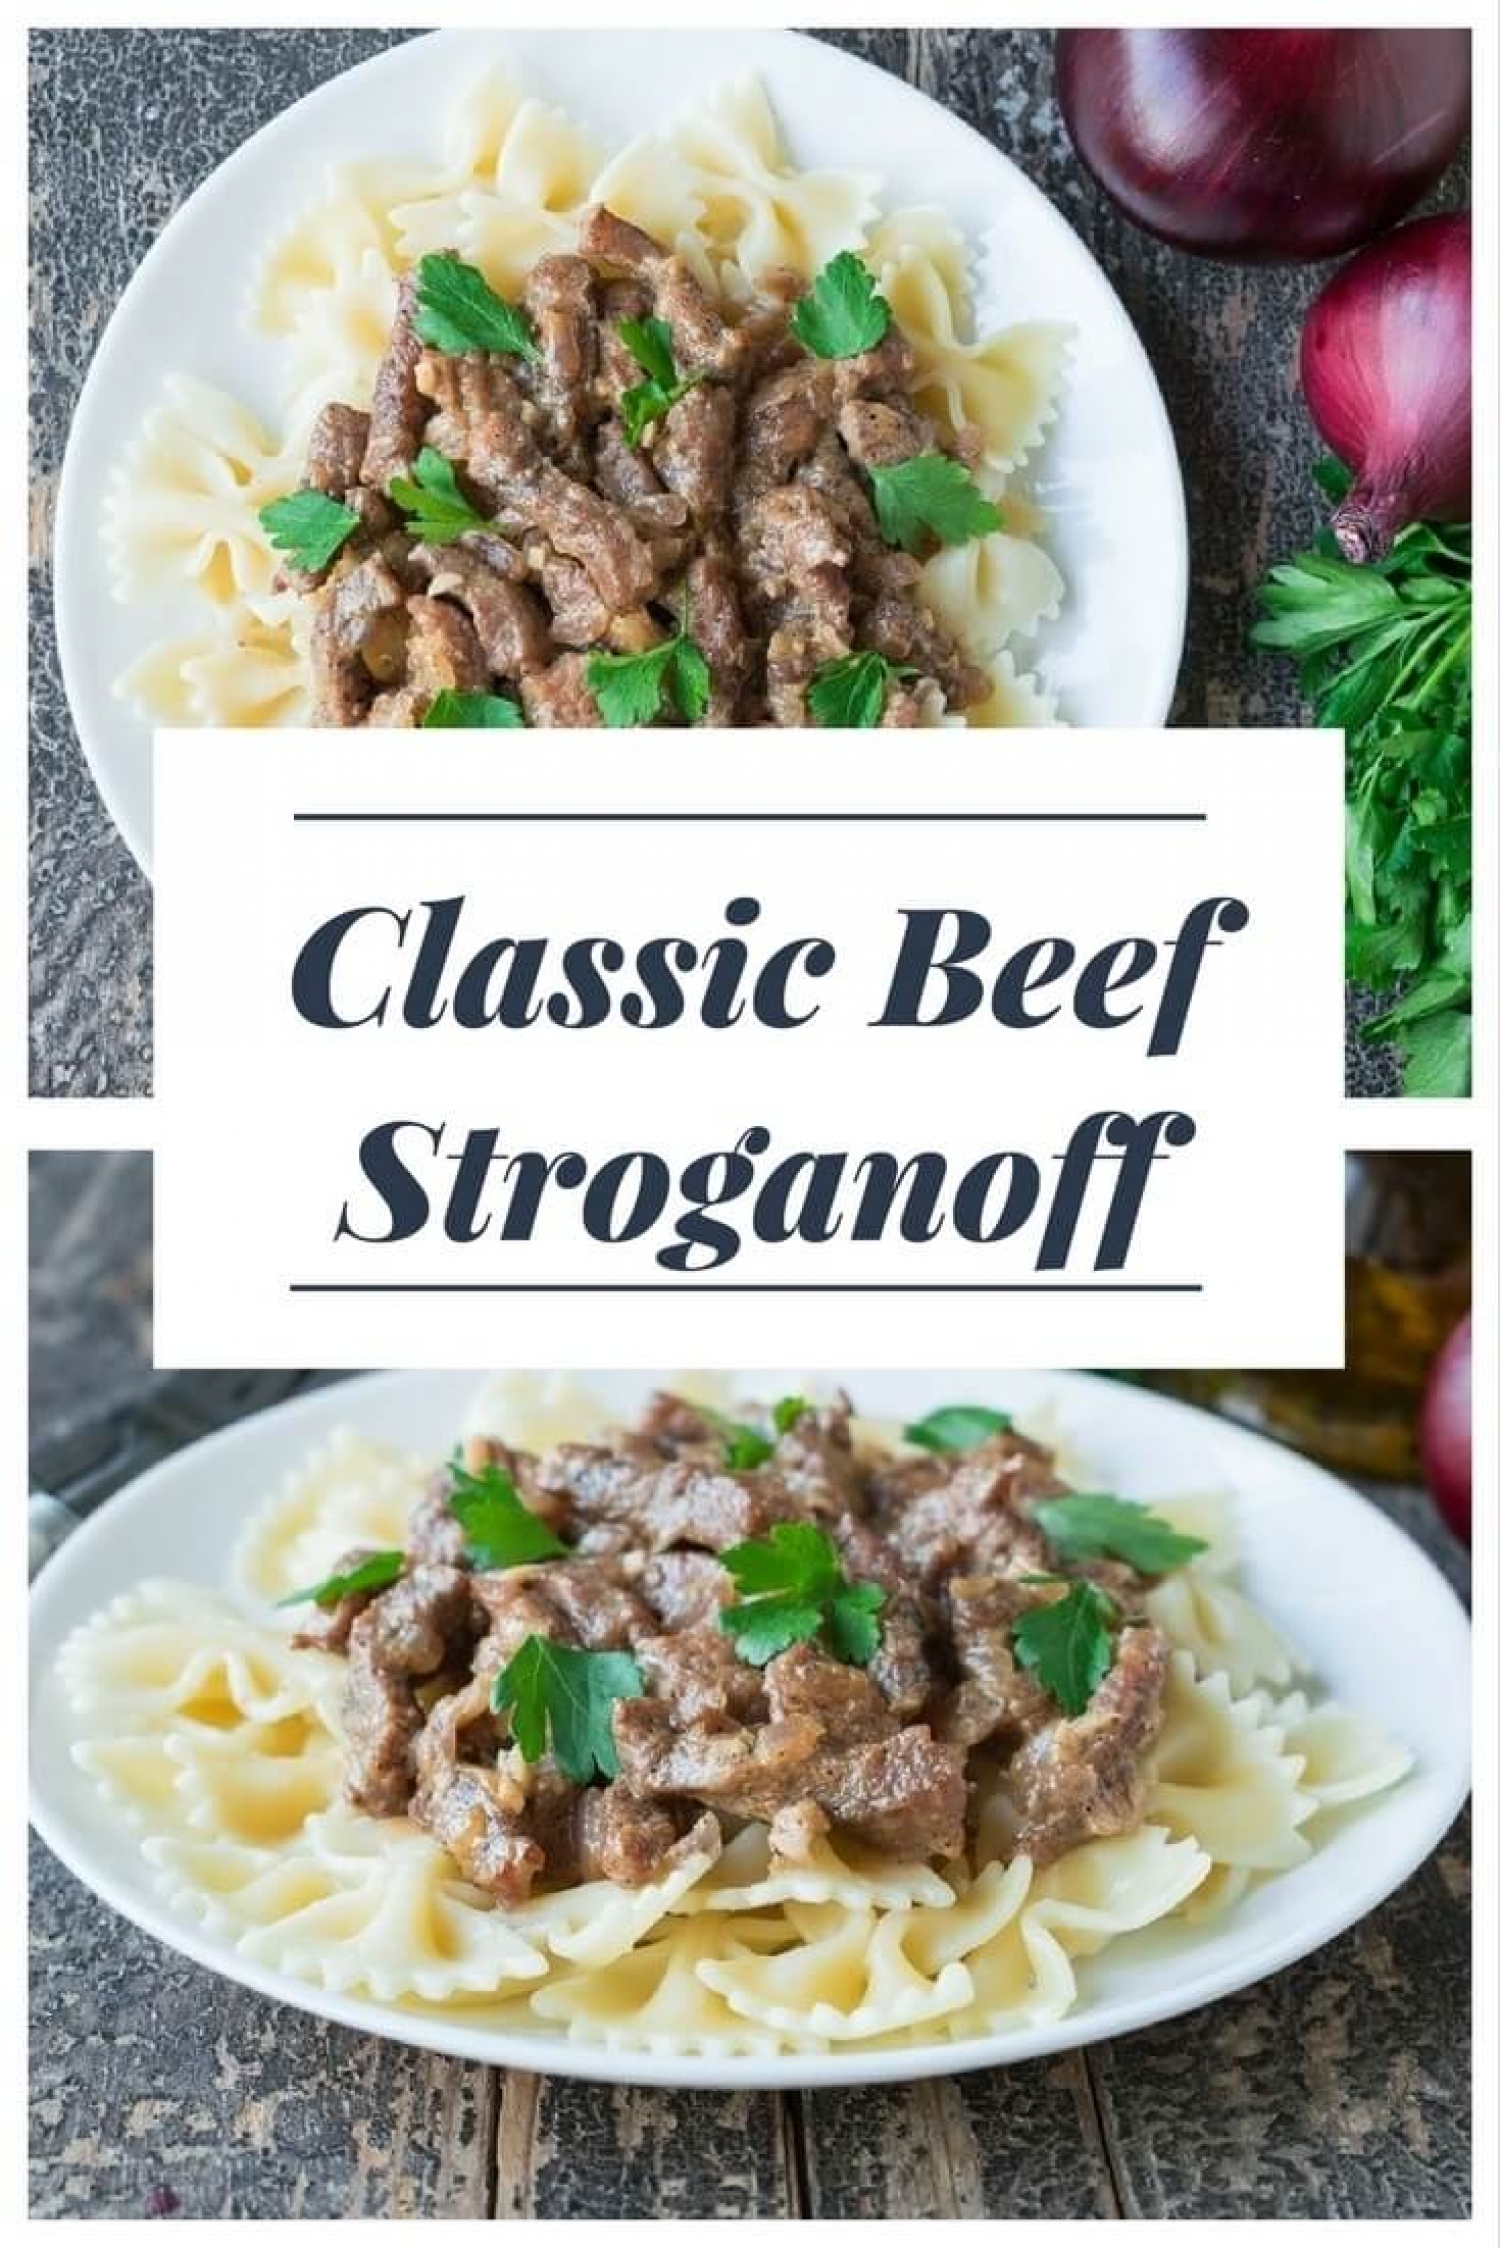 Classic Beef Stroganoff